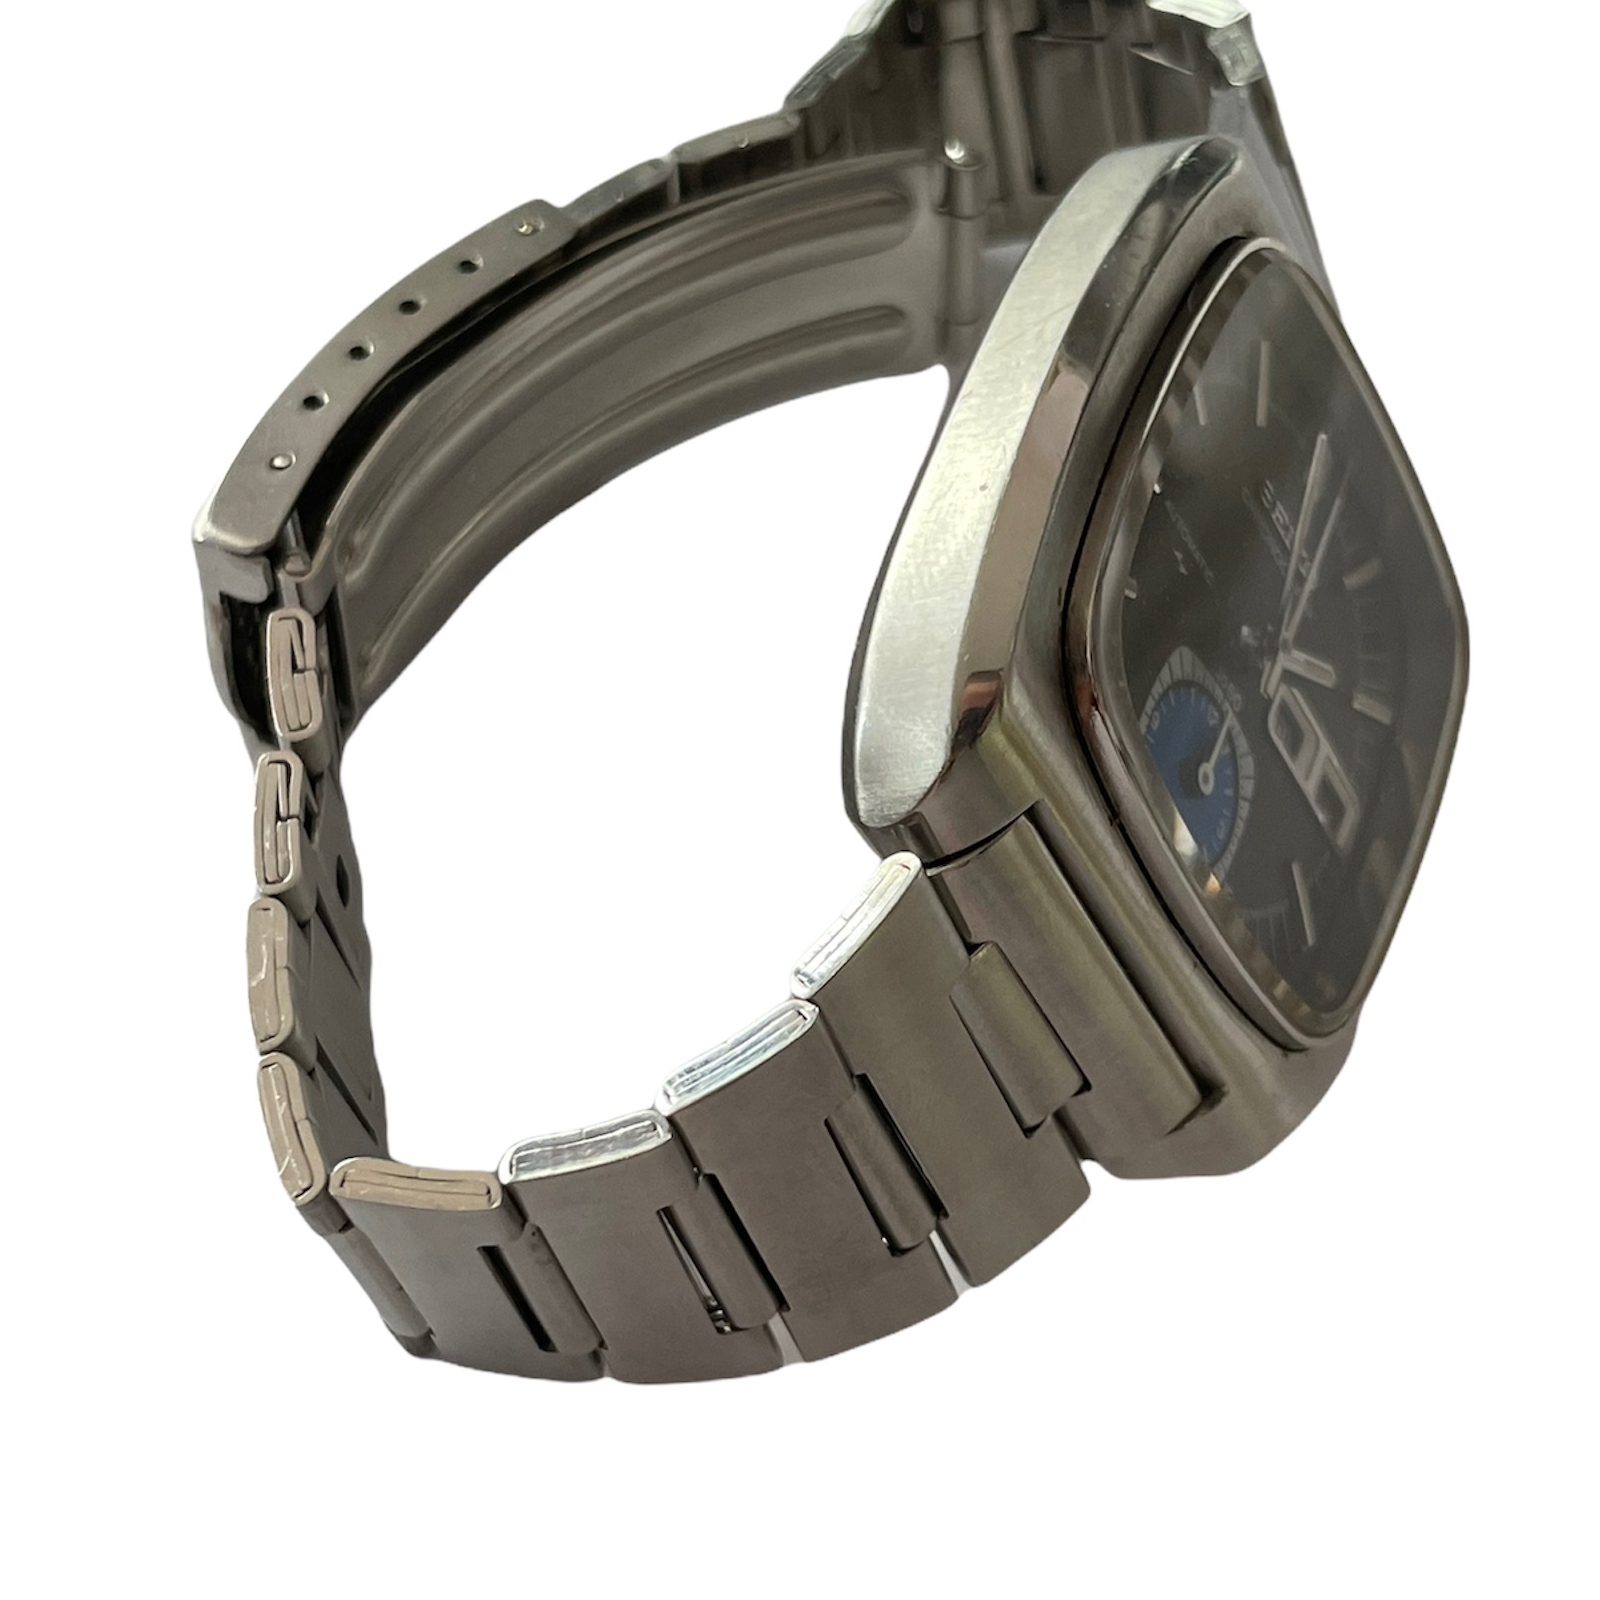 Vintage Seiko Monaco automatic chronograph men's watch 7016-5011 - 219667